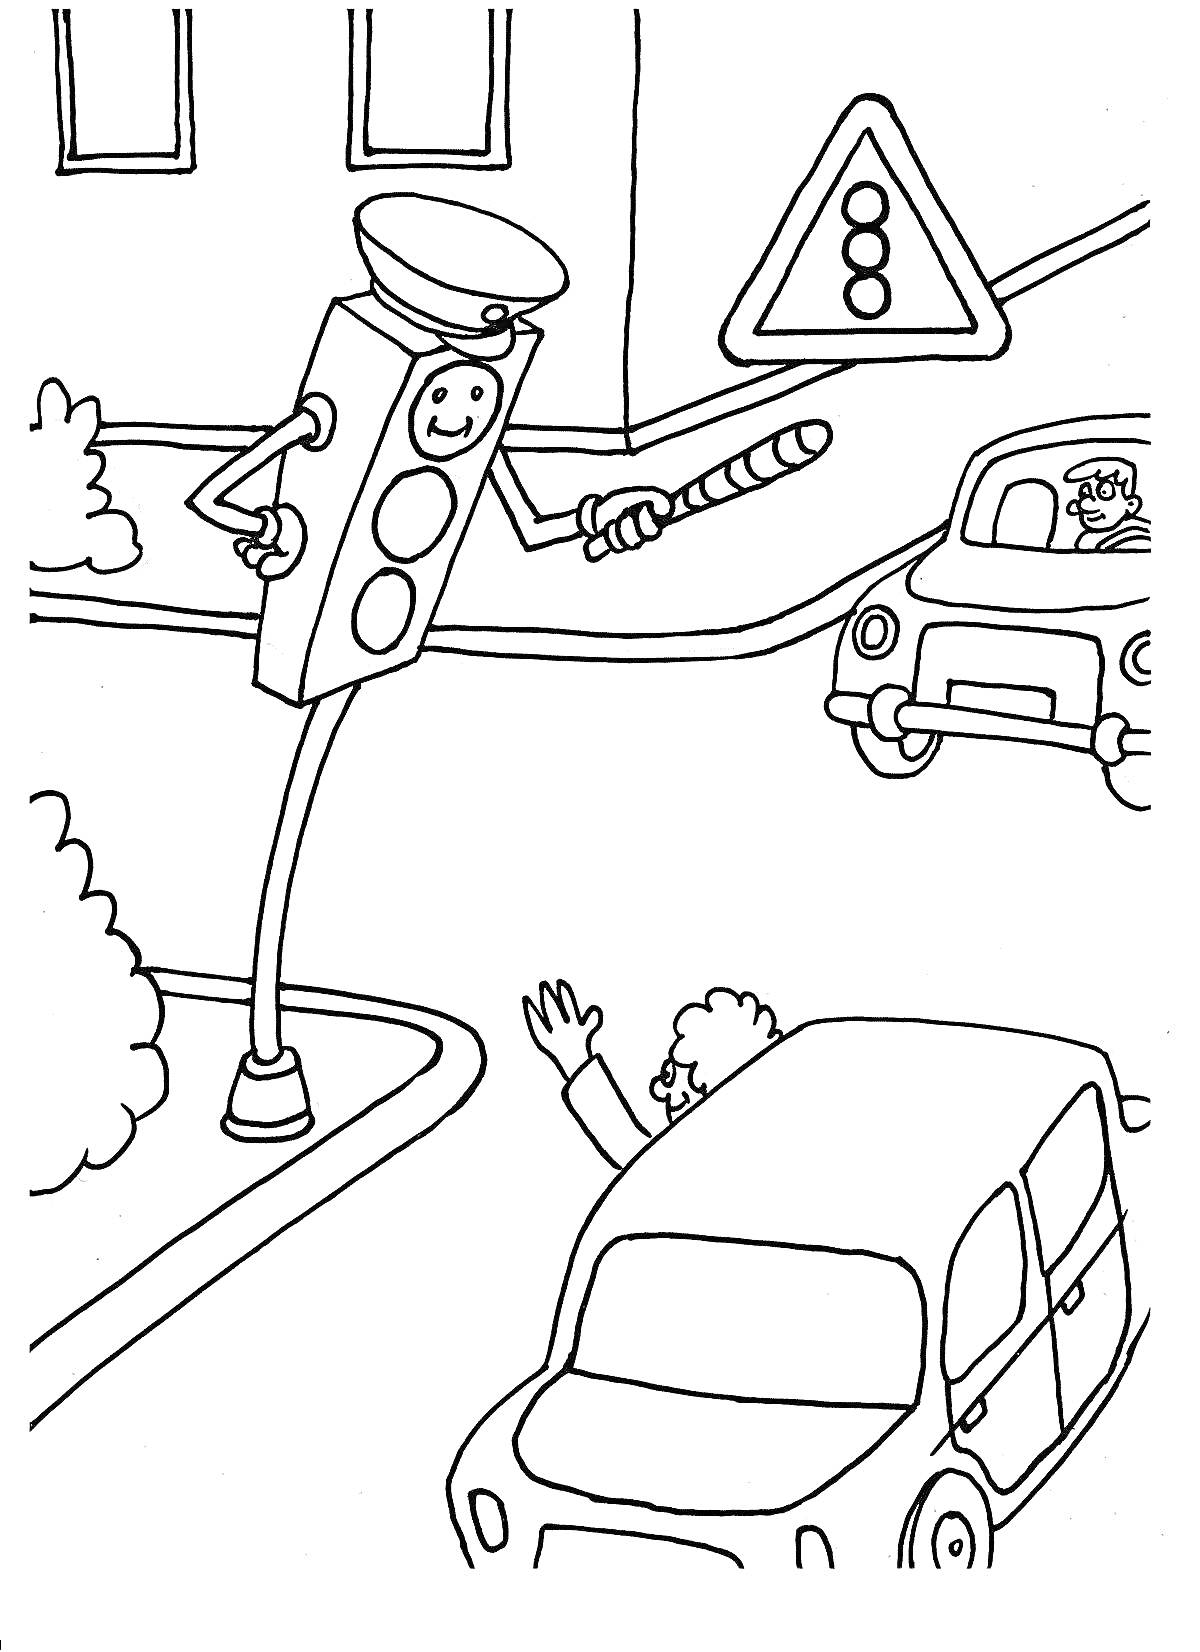 Раскраска Перекресток с говорящим светофором, дорожным знаком и машинами